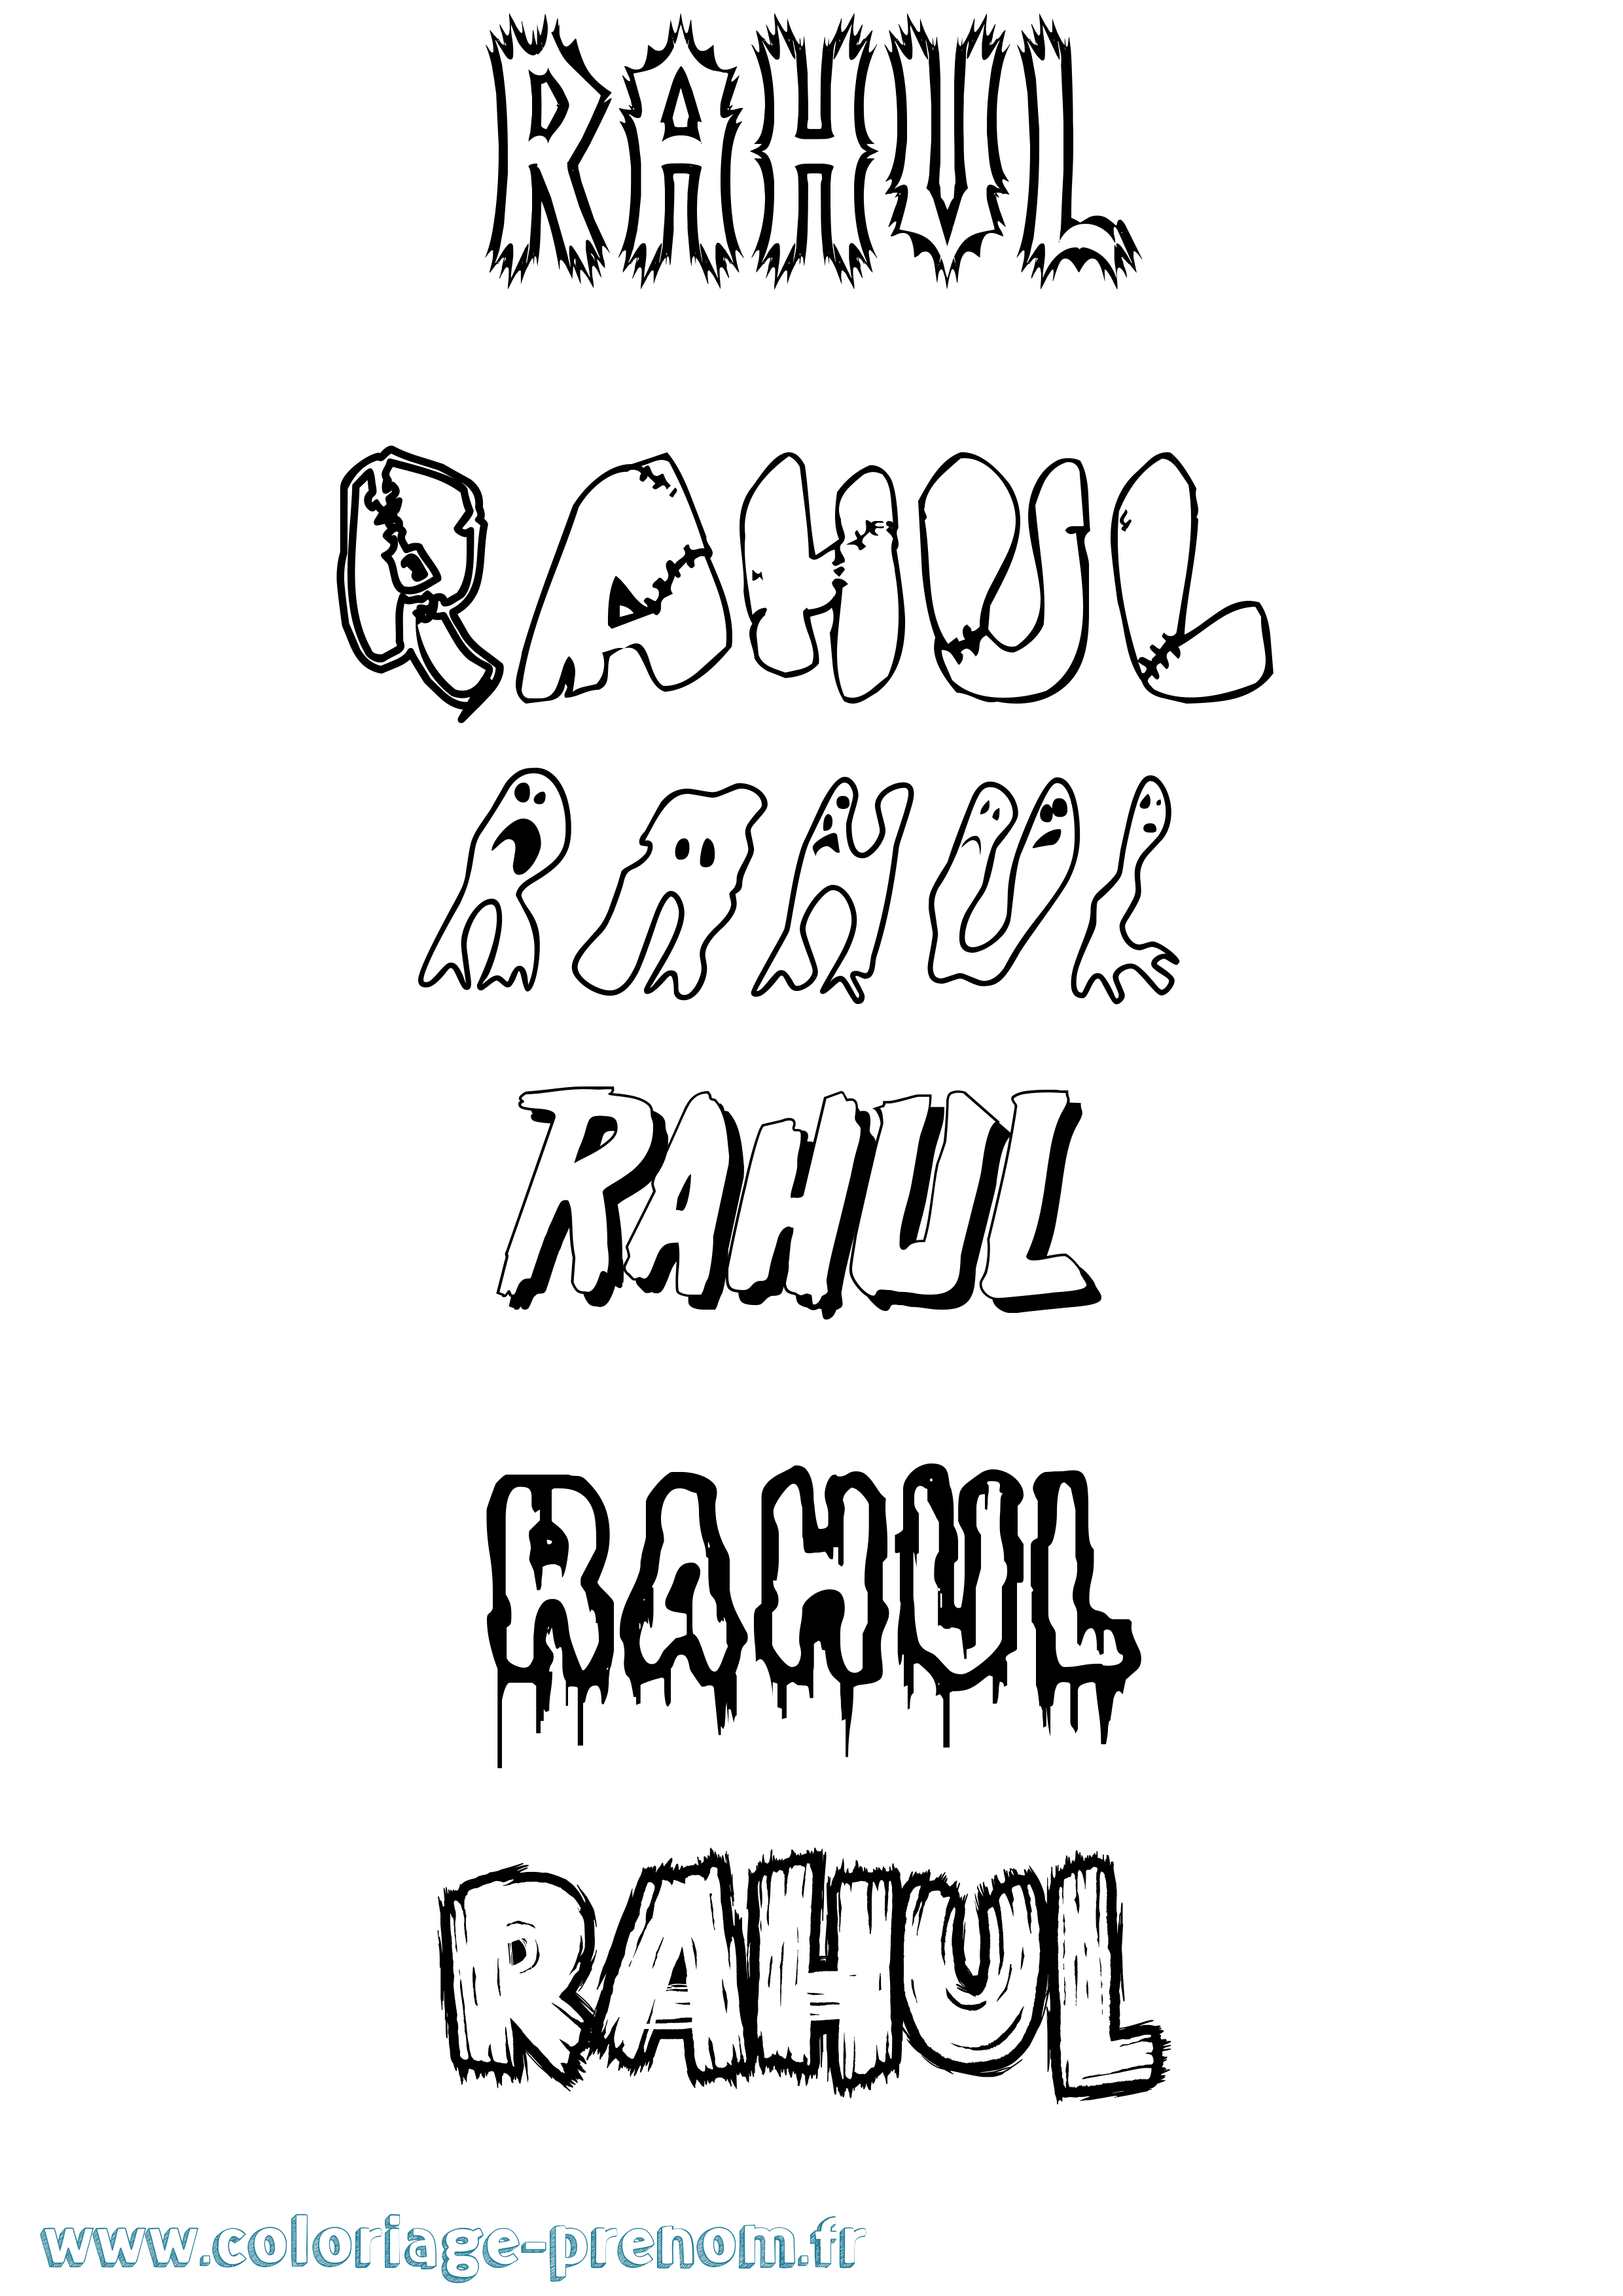 Coloriage prénom Rahul Frisson